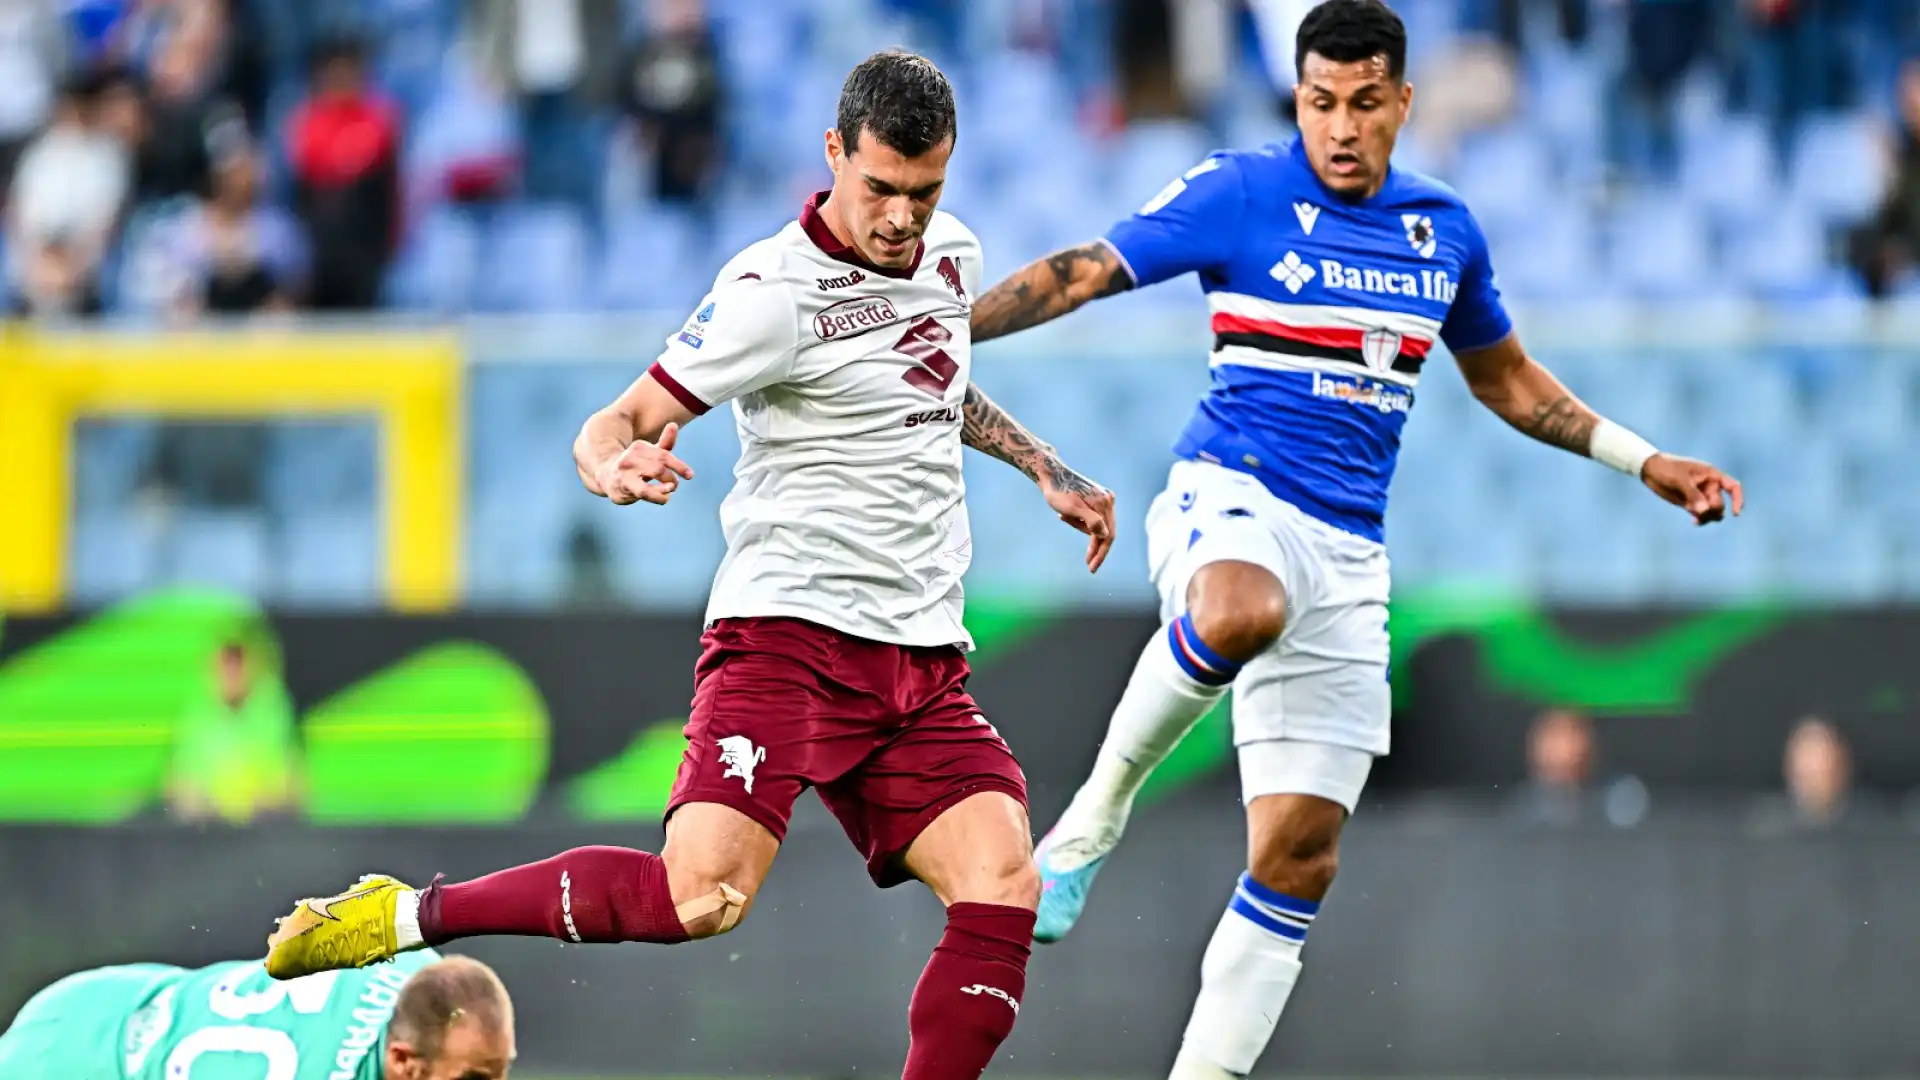 L'ex Genoa, ora al Torino, ha segnato il gol del 2-0